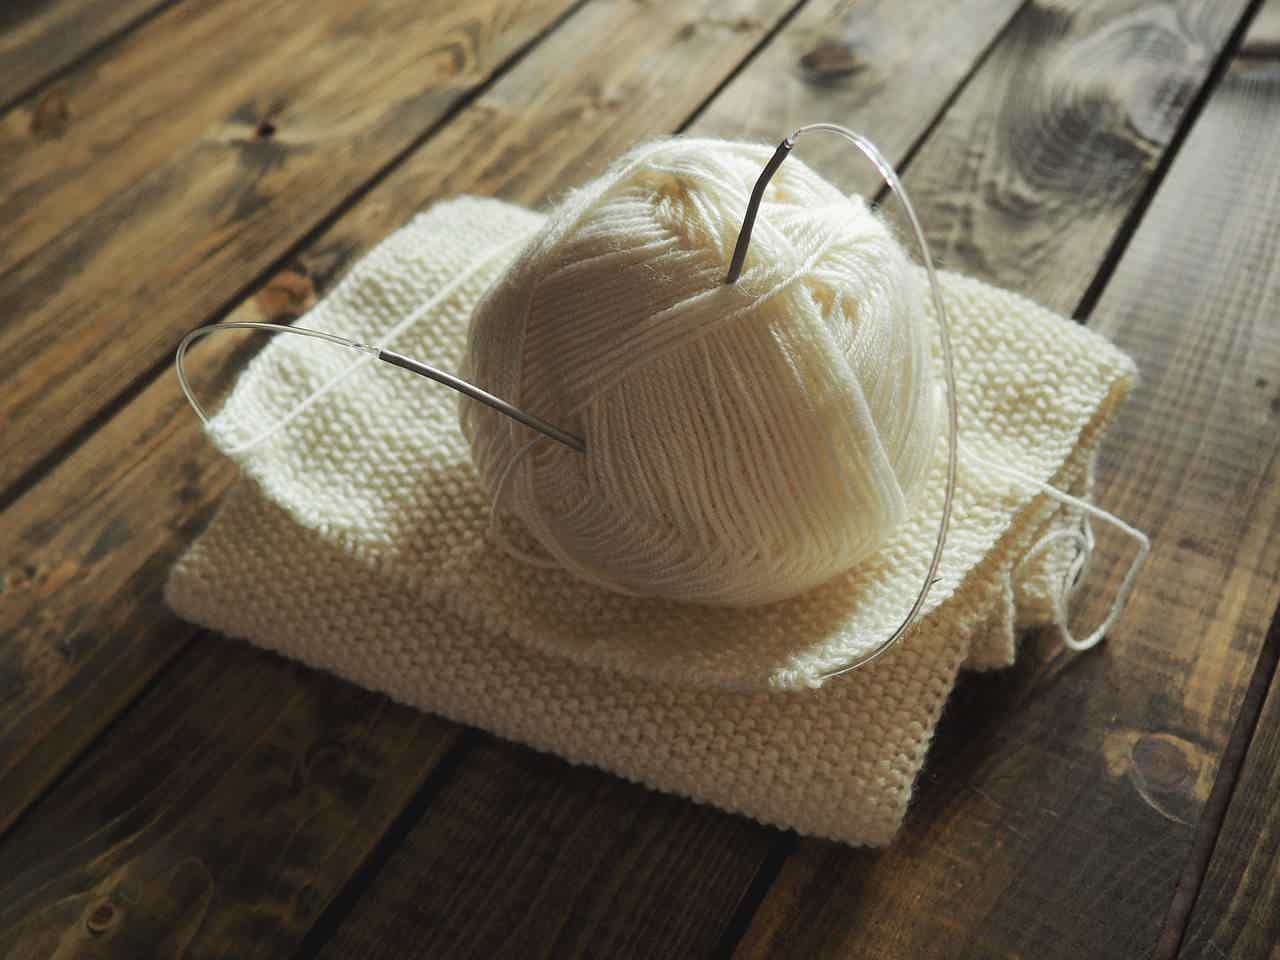 Entenda mais sobre como fazer um curso de tricô e crochê